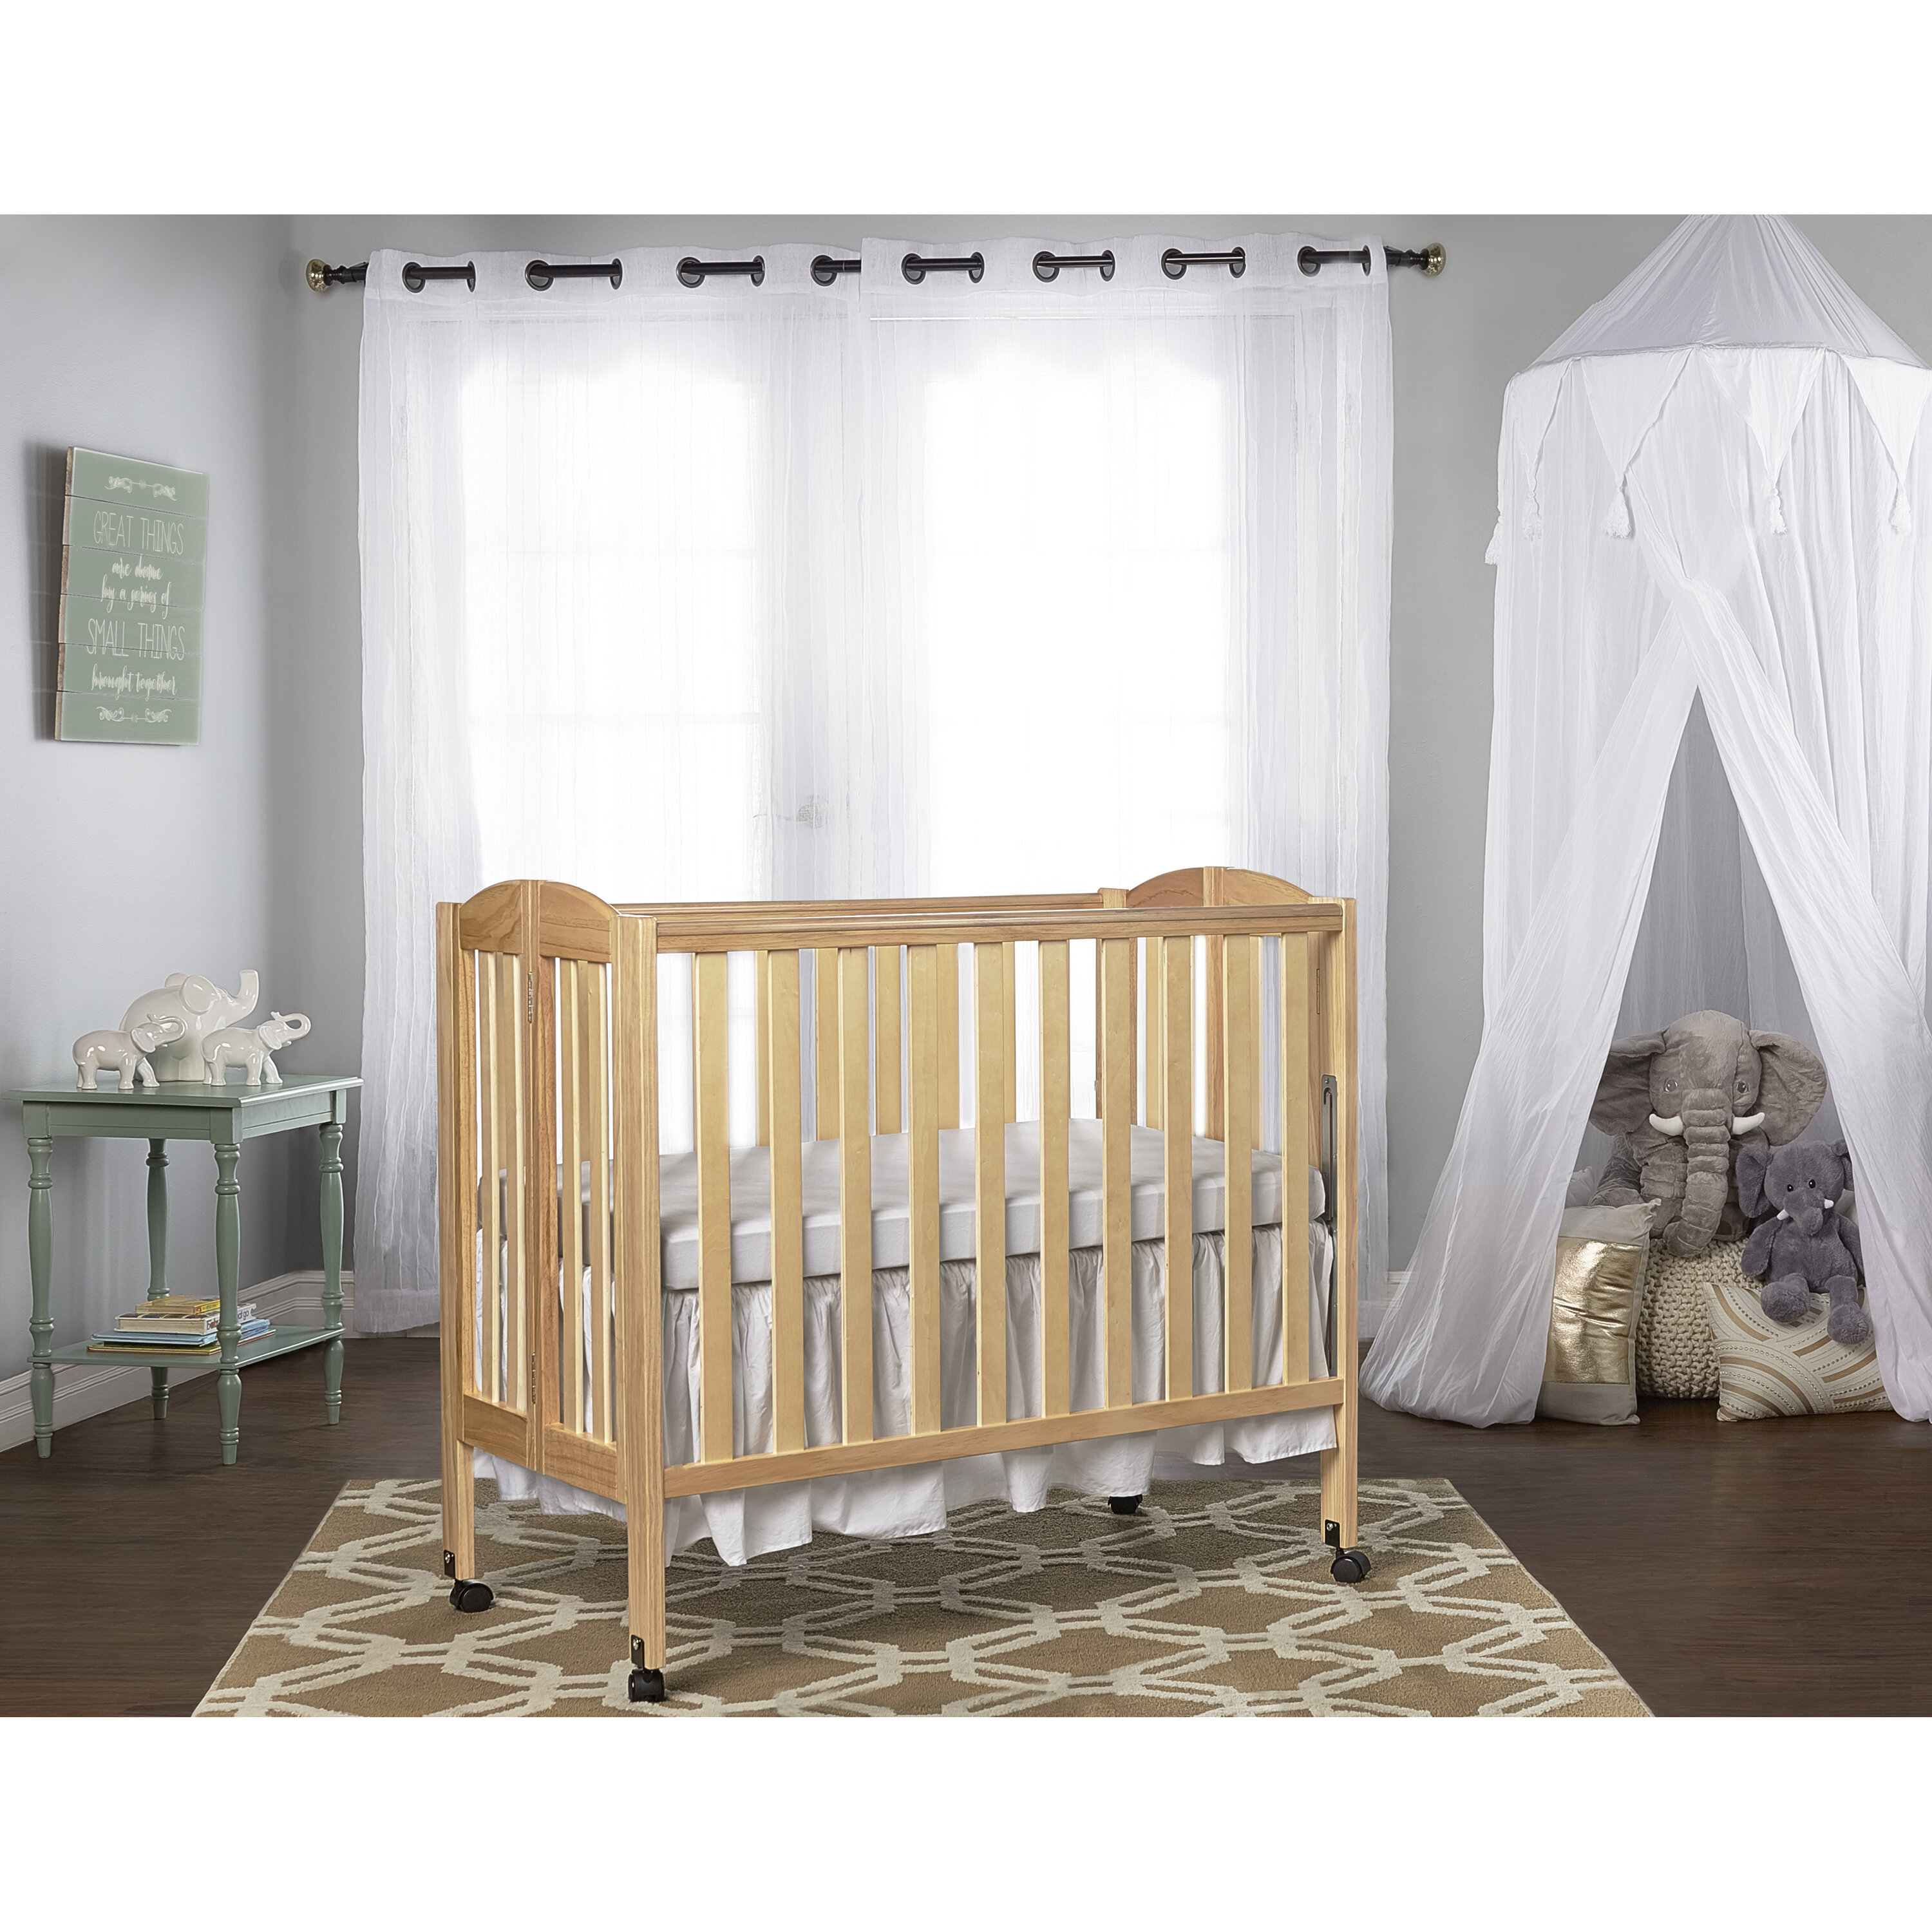 small crib for newborn